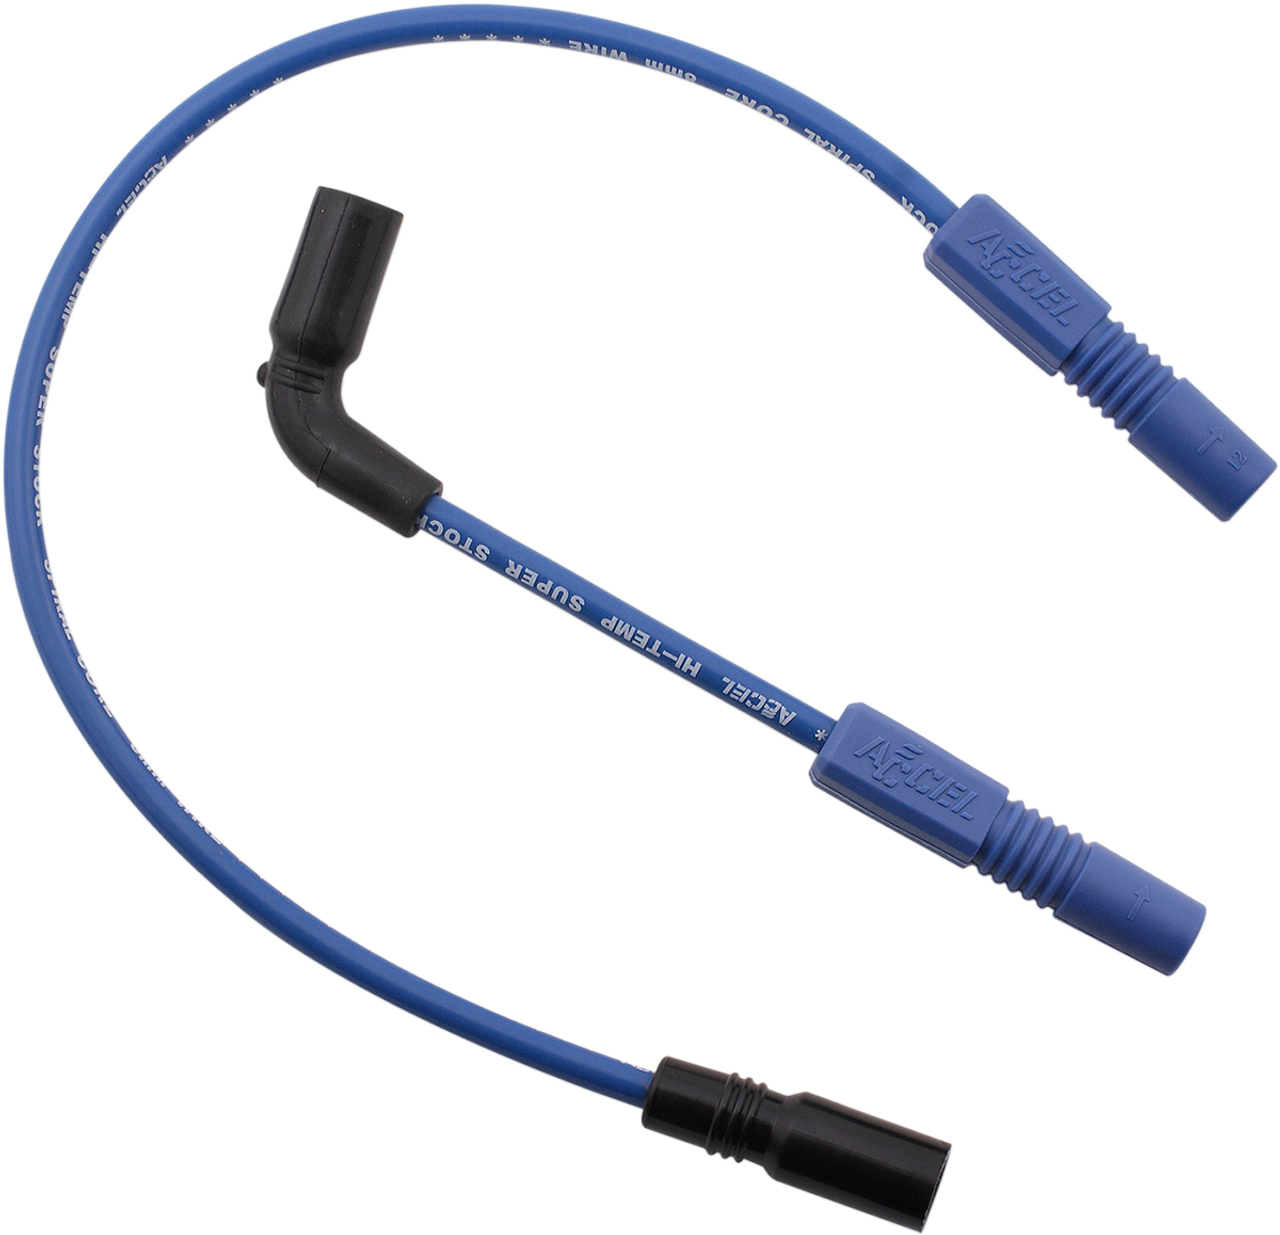 Spark Plug Wire - 07-19 XL - Blue